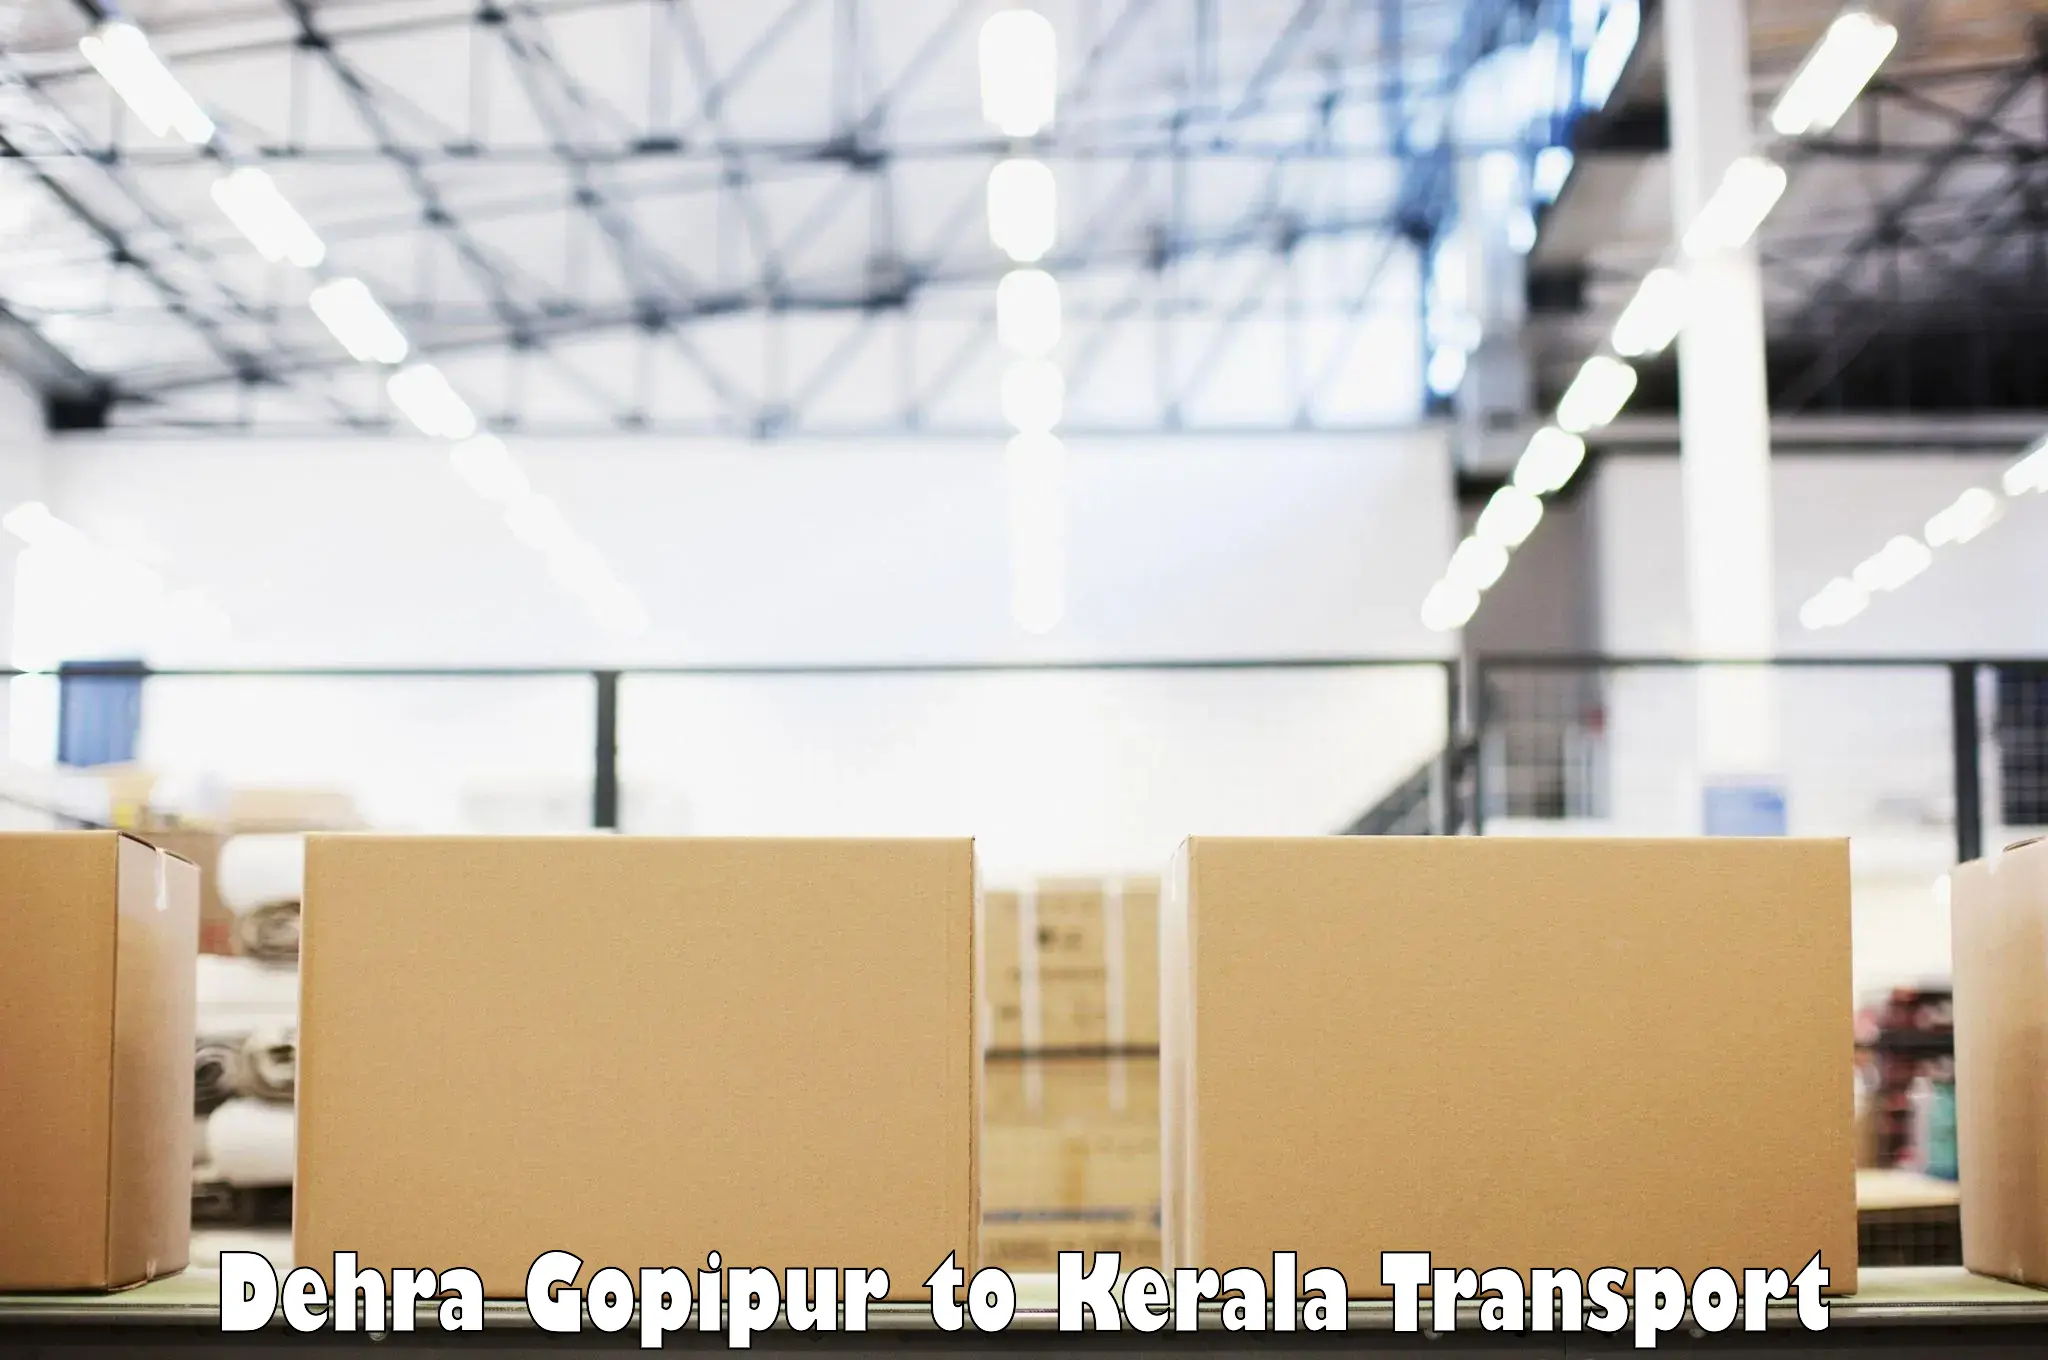 Transport in sharing Dehra Gopipur to Kottarakkara